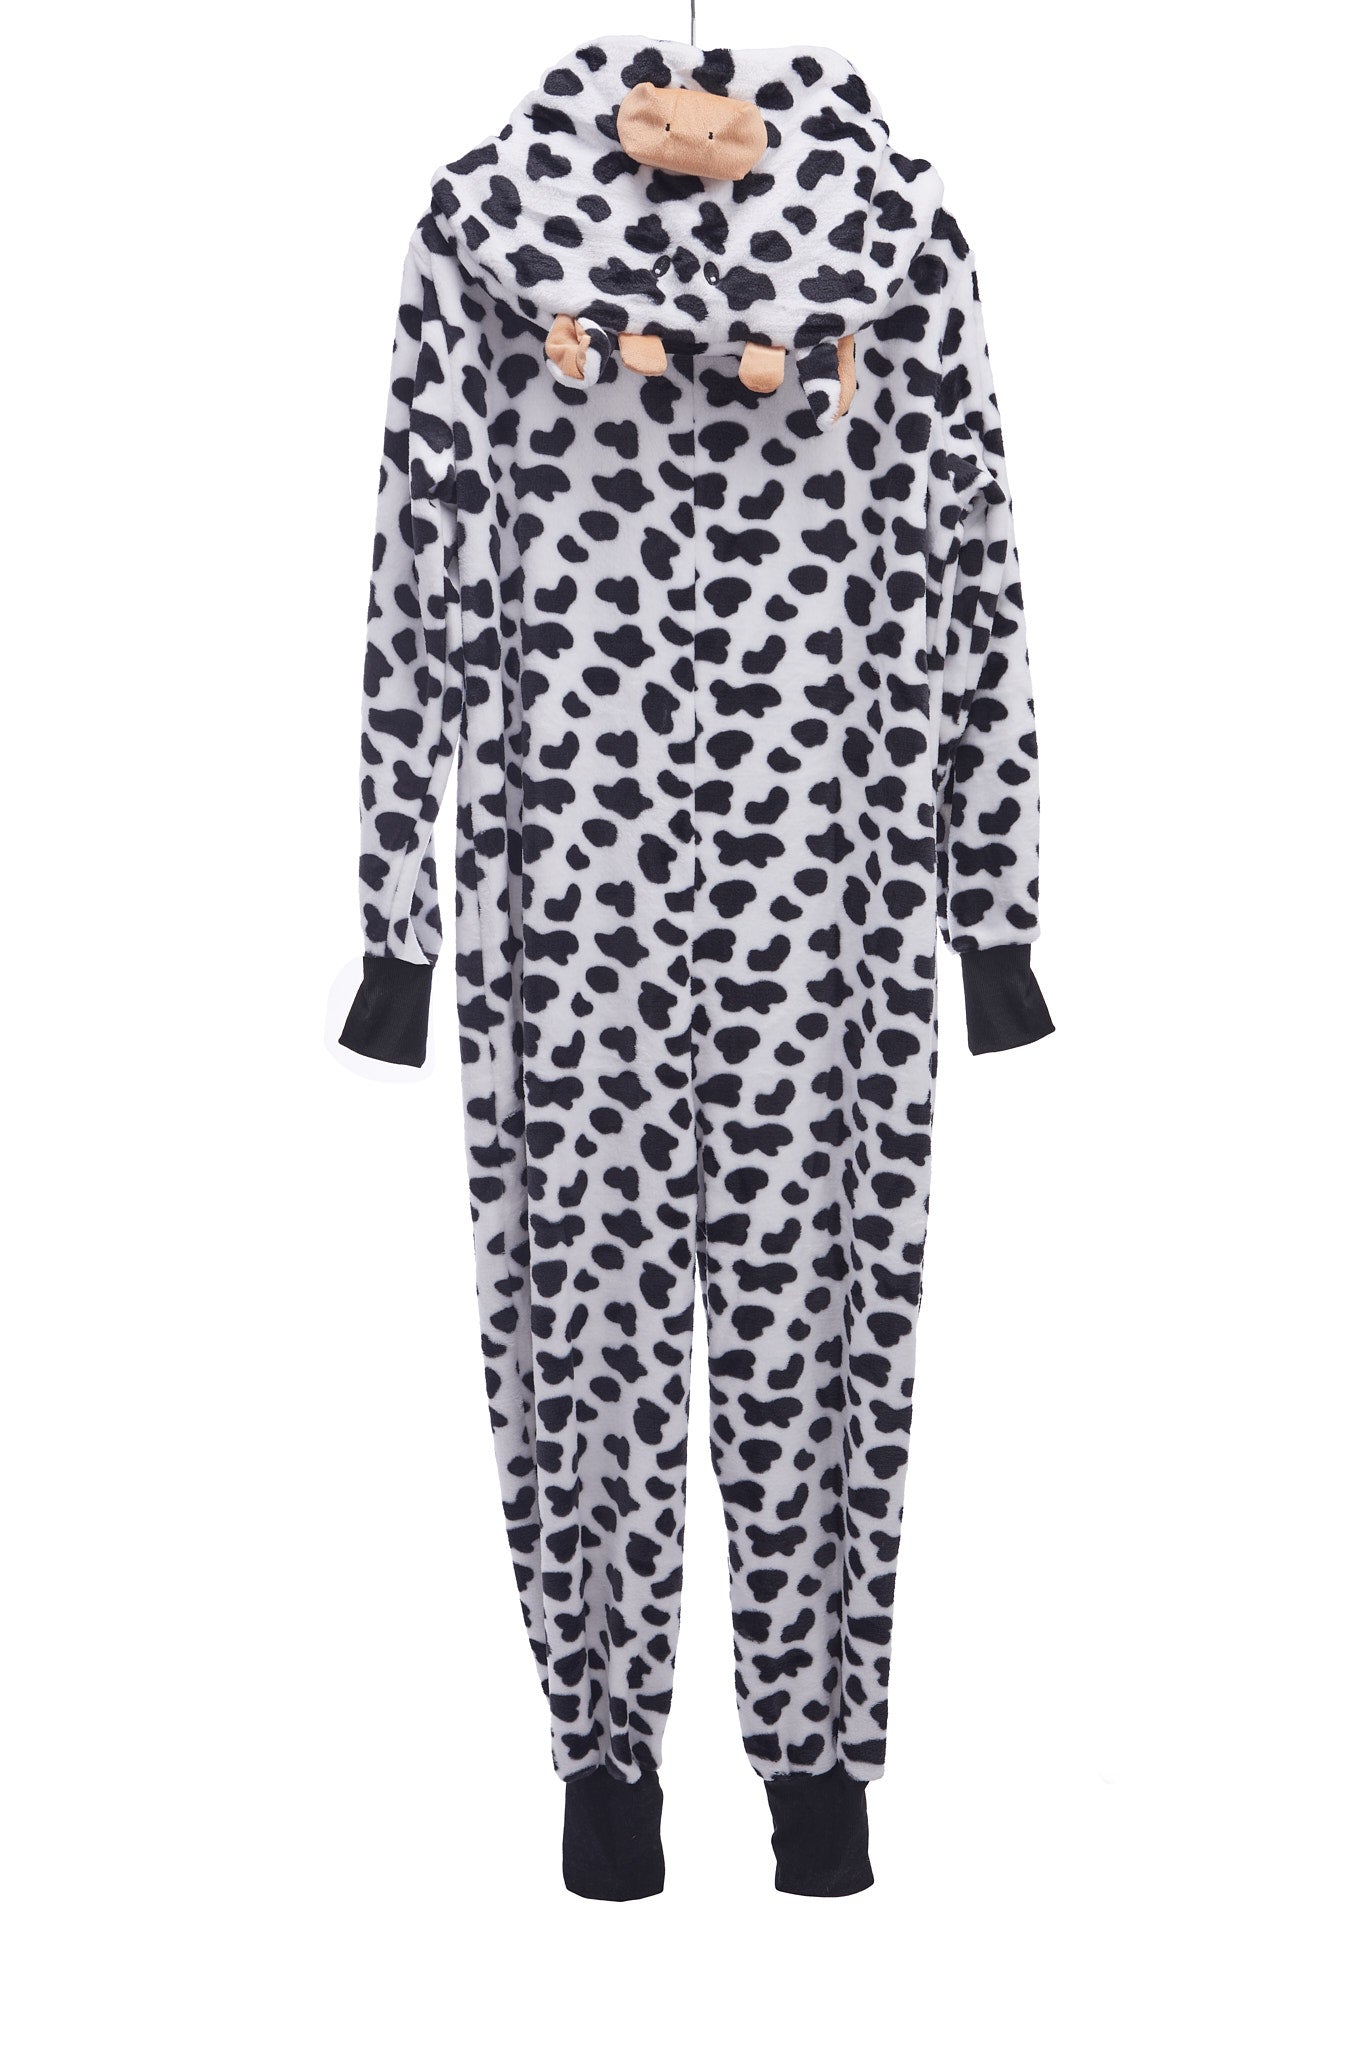 Pijama Macacão com Capuz Vaca